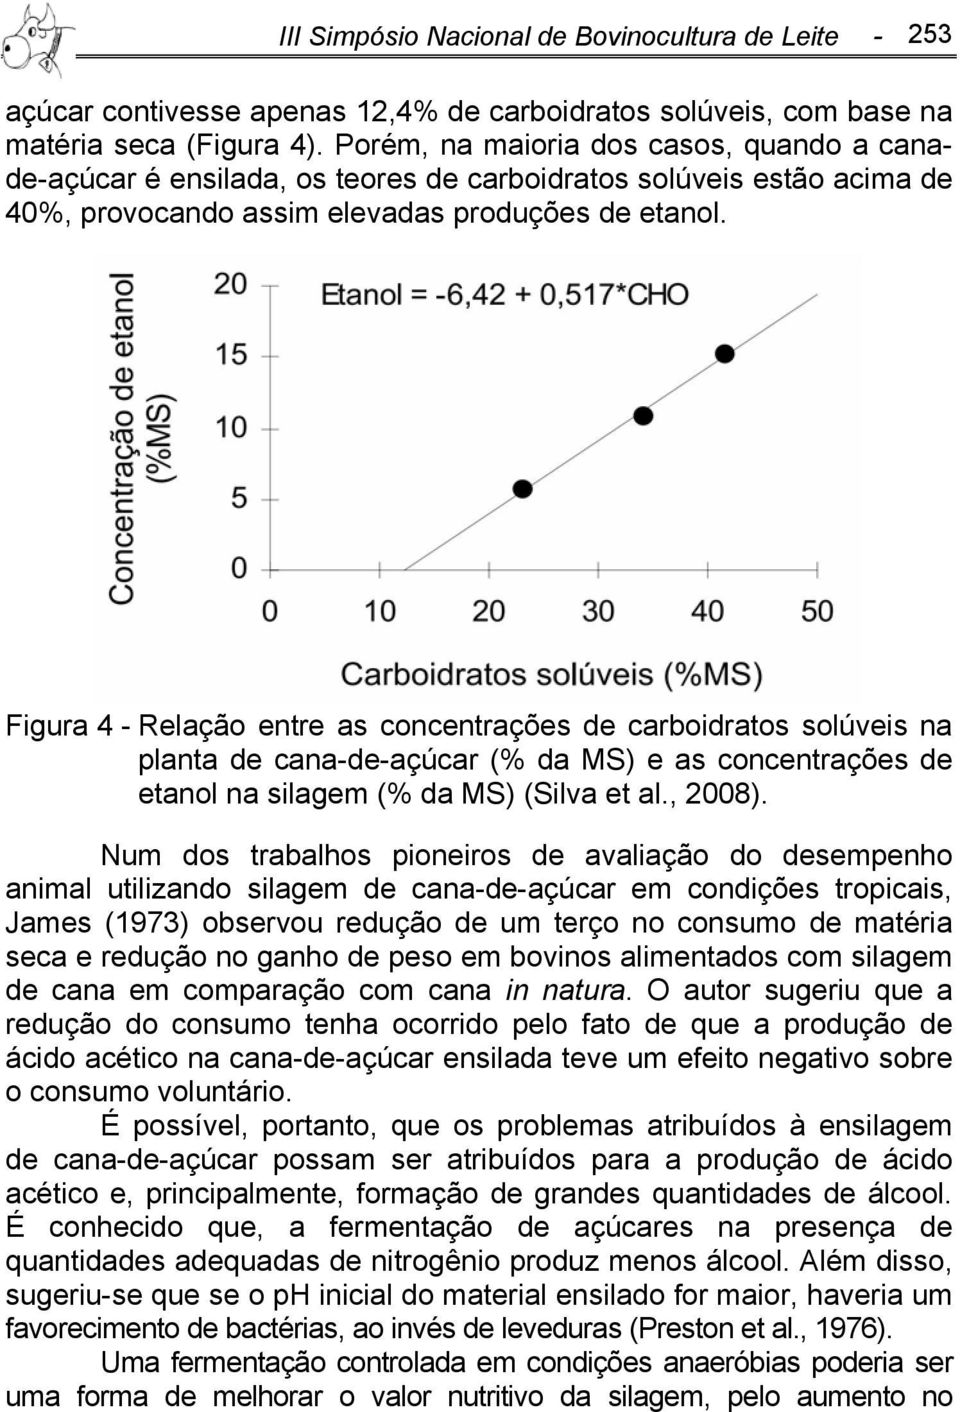 Figura 4 - Relação entre as concentrações de carboidratos solúveis na planta de cana-de-açúcar (% da MS) e as concentrações de etanol na silagem (% da MS) (Silva et al., 2008).